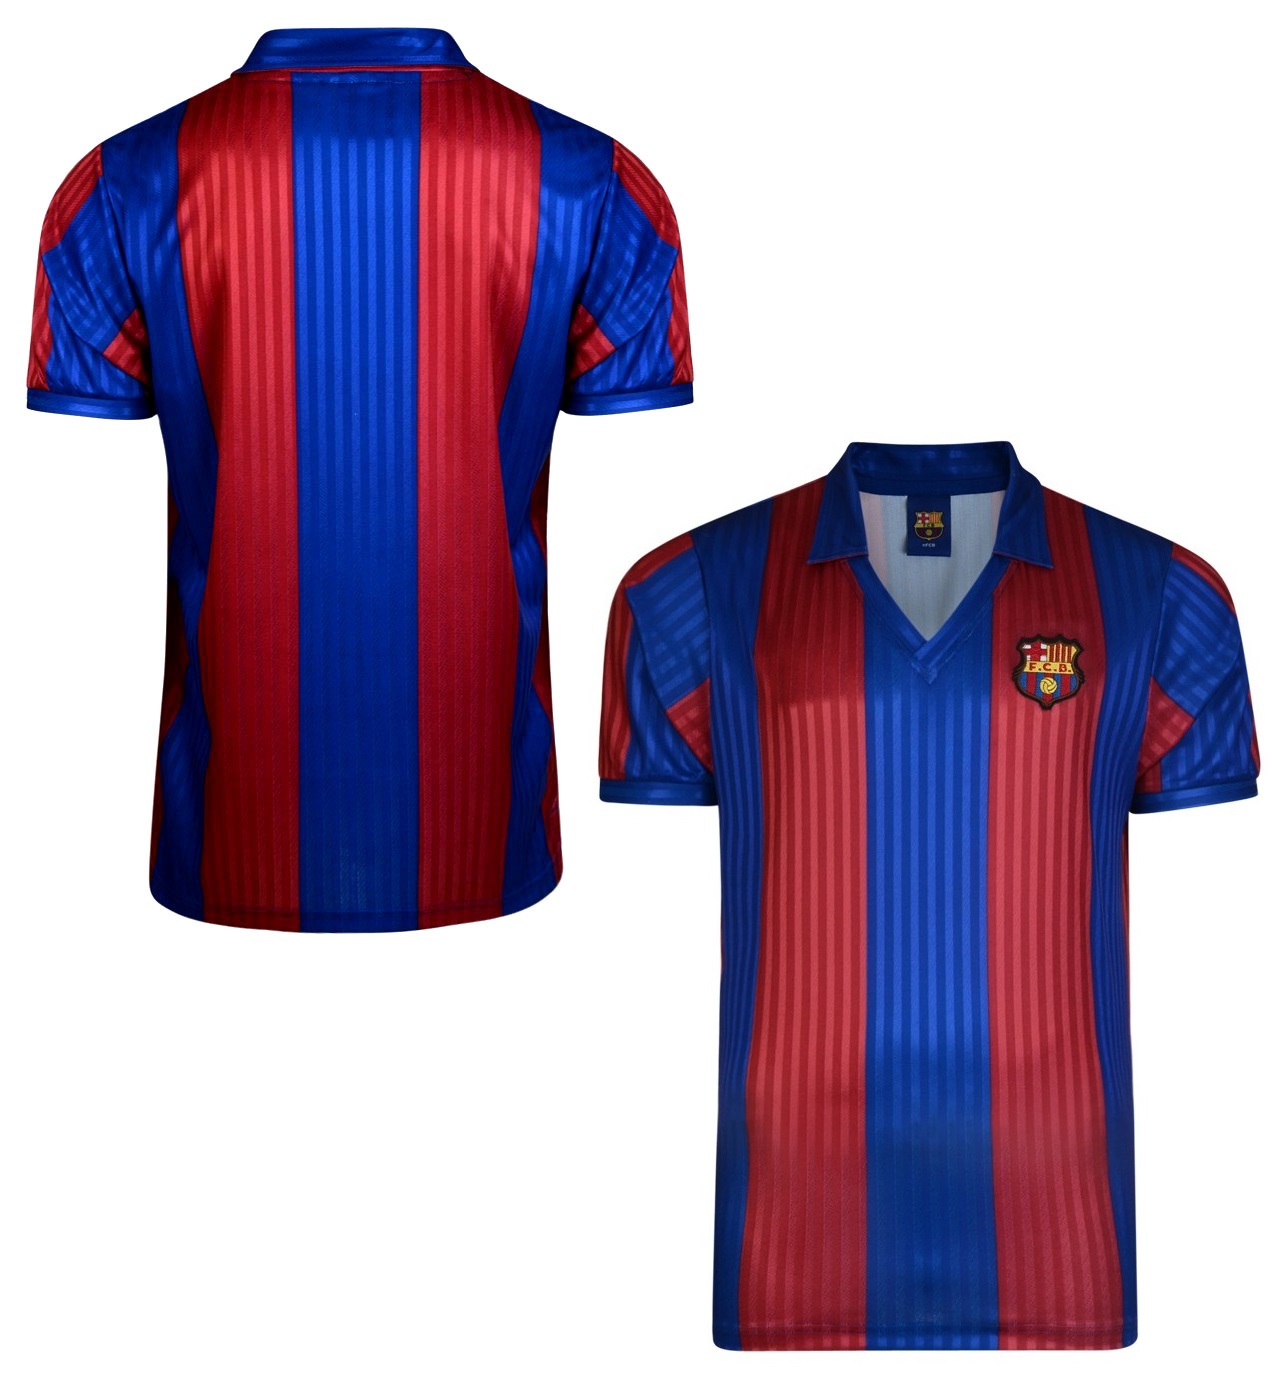 Score Draw FC Barcelona jersey 1991/92 